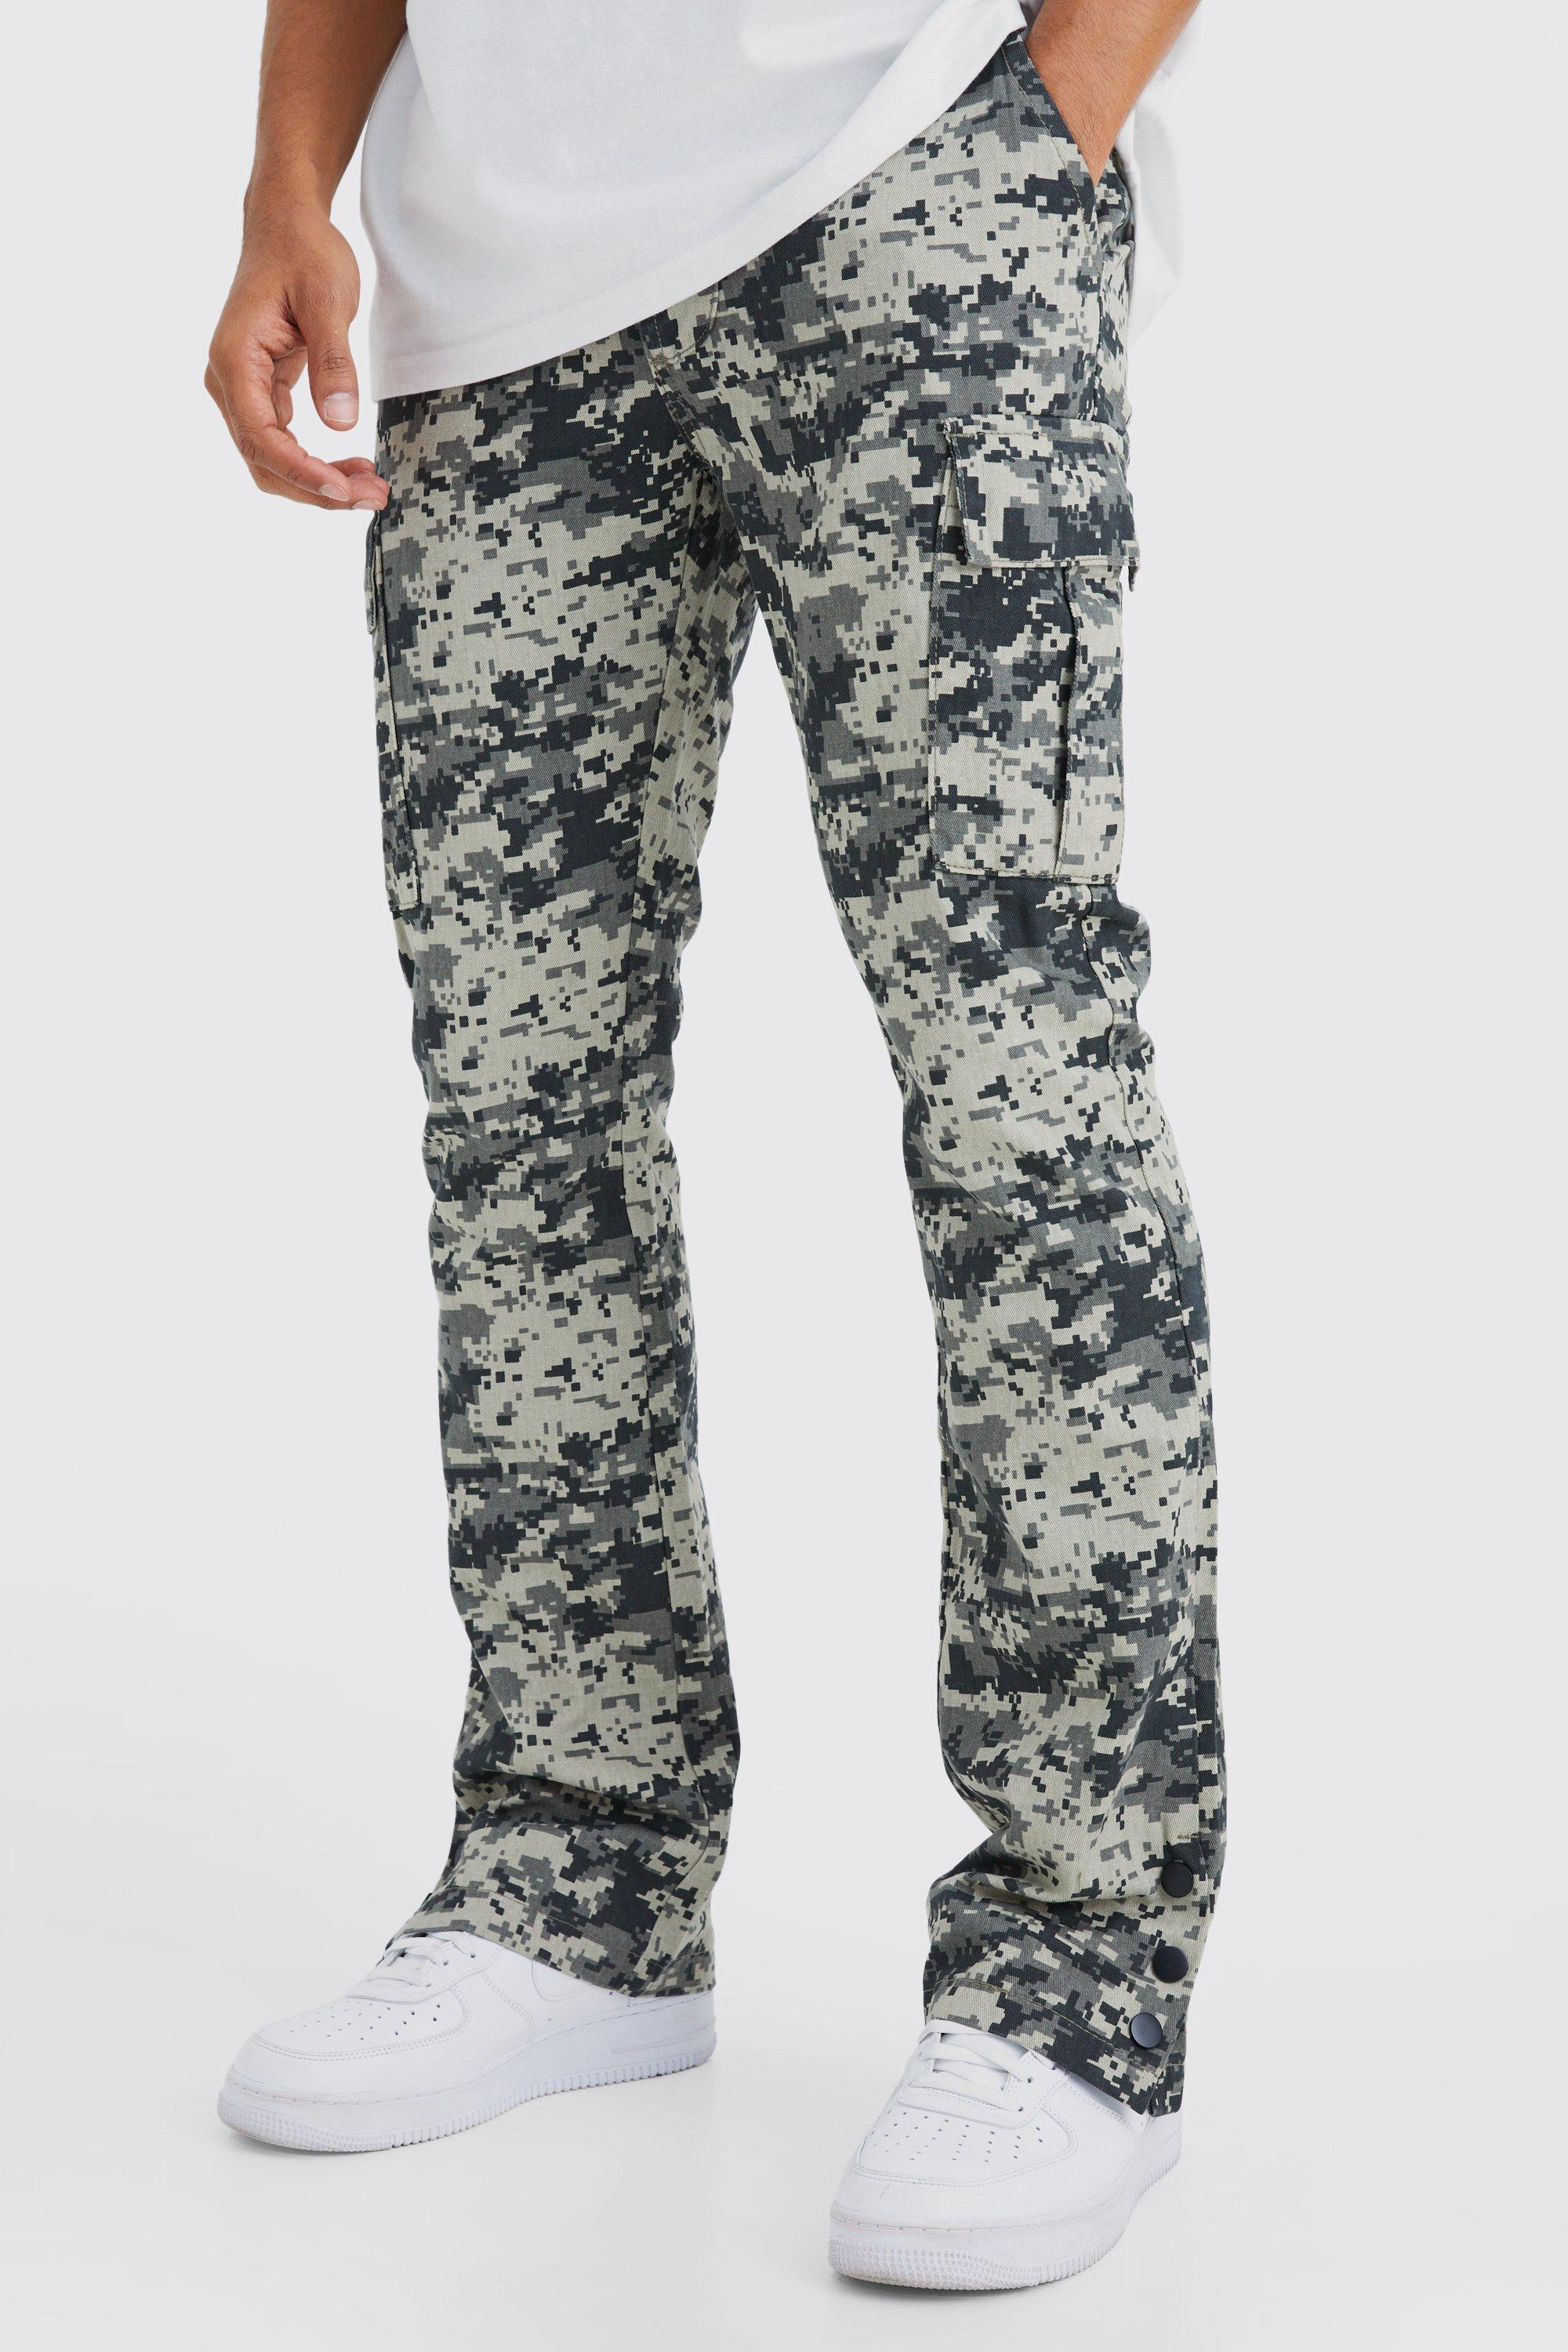 Image of Pantaloni Cargo Slim Fit in fantasia militare con bottoni a pressione sul fondo, Grigio